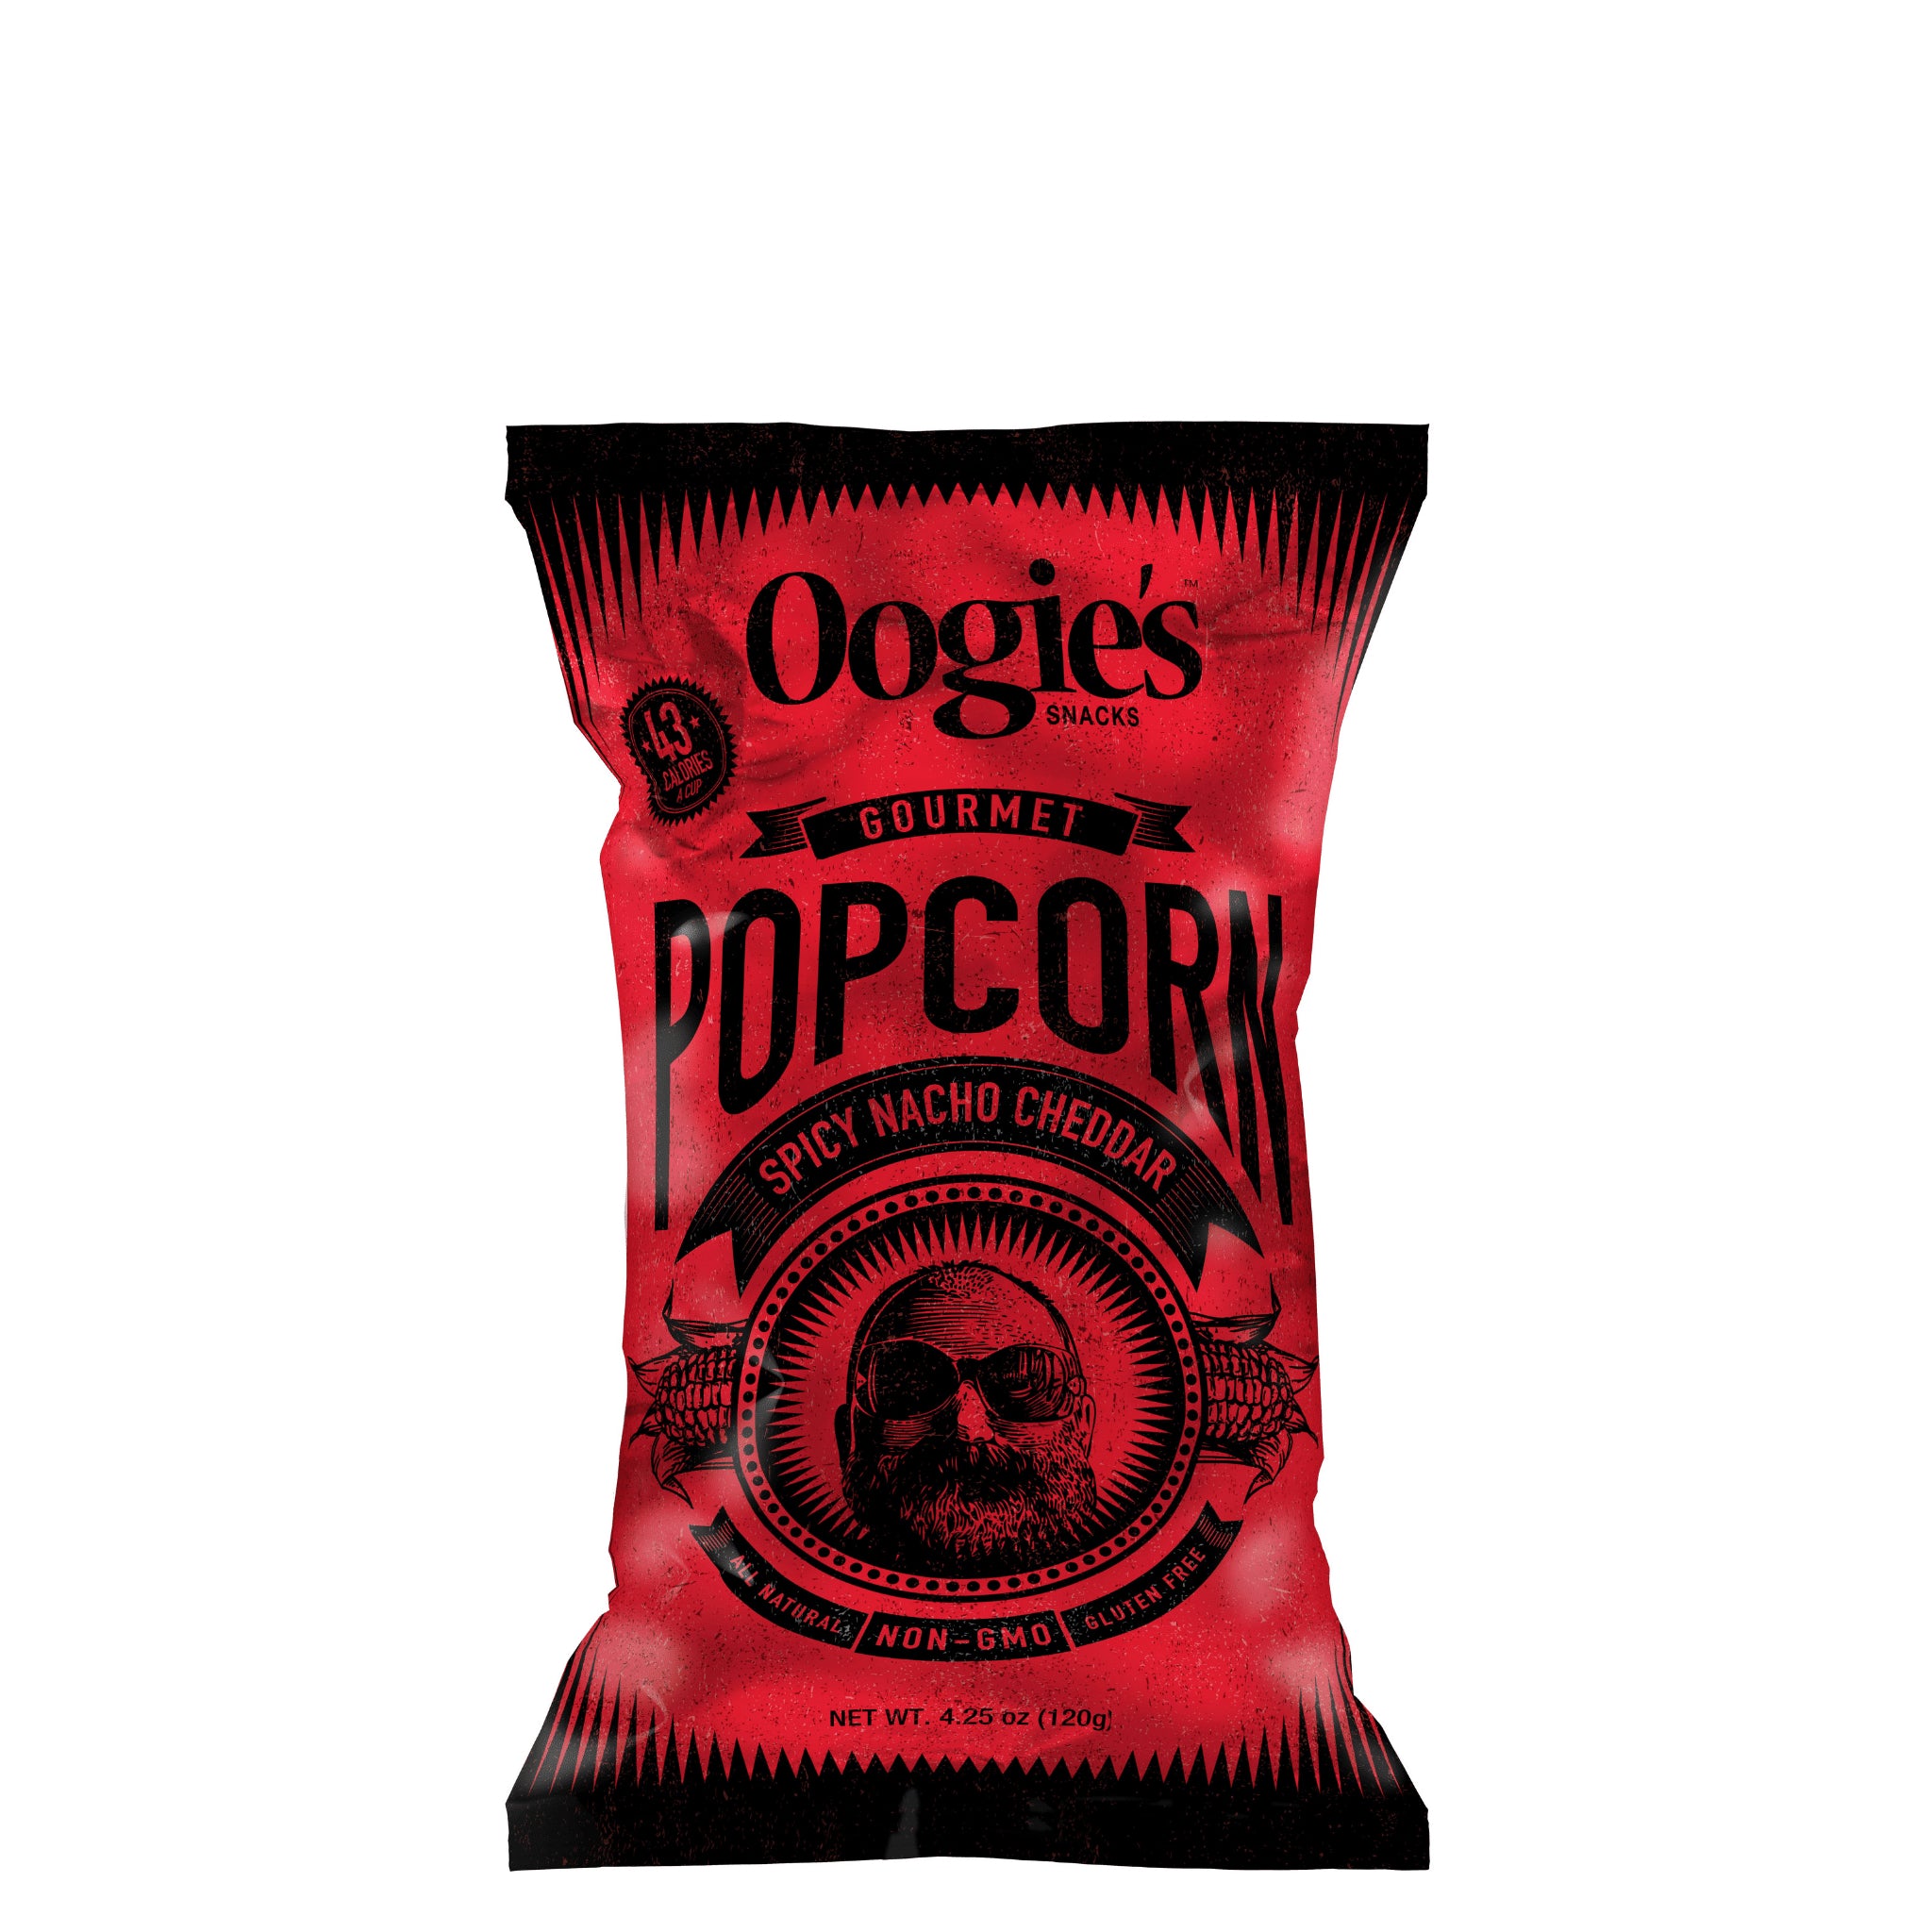 Spicy nacho cheddar gourmet popcorn bag